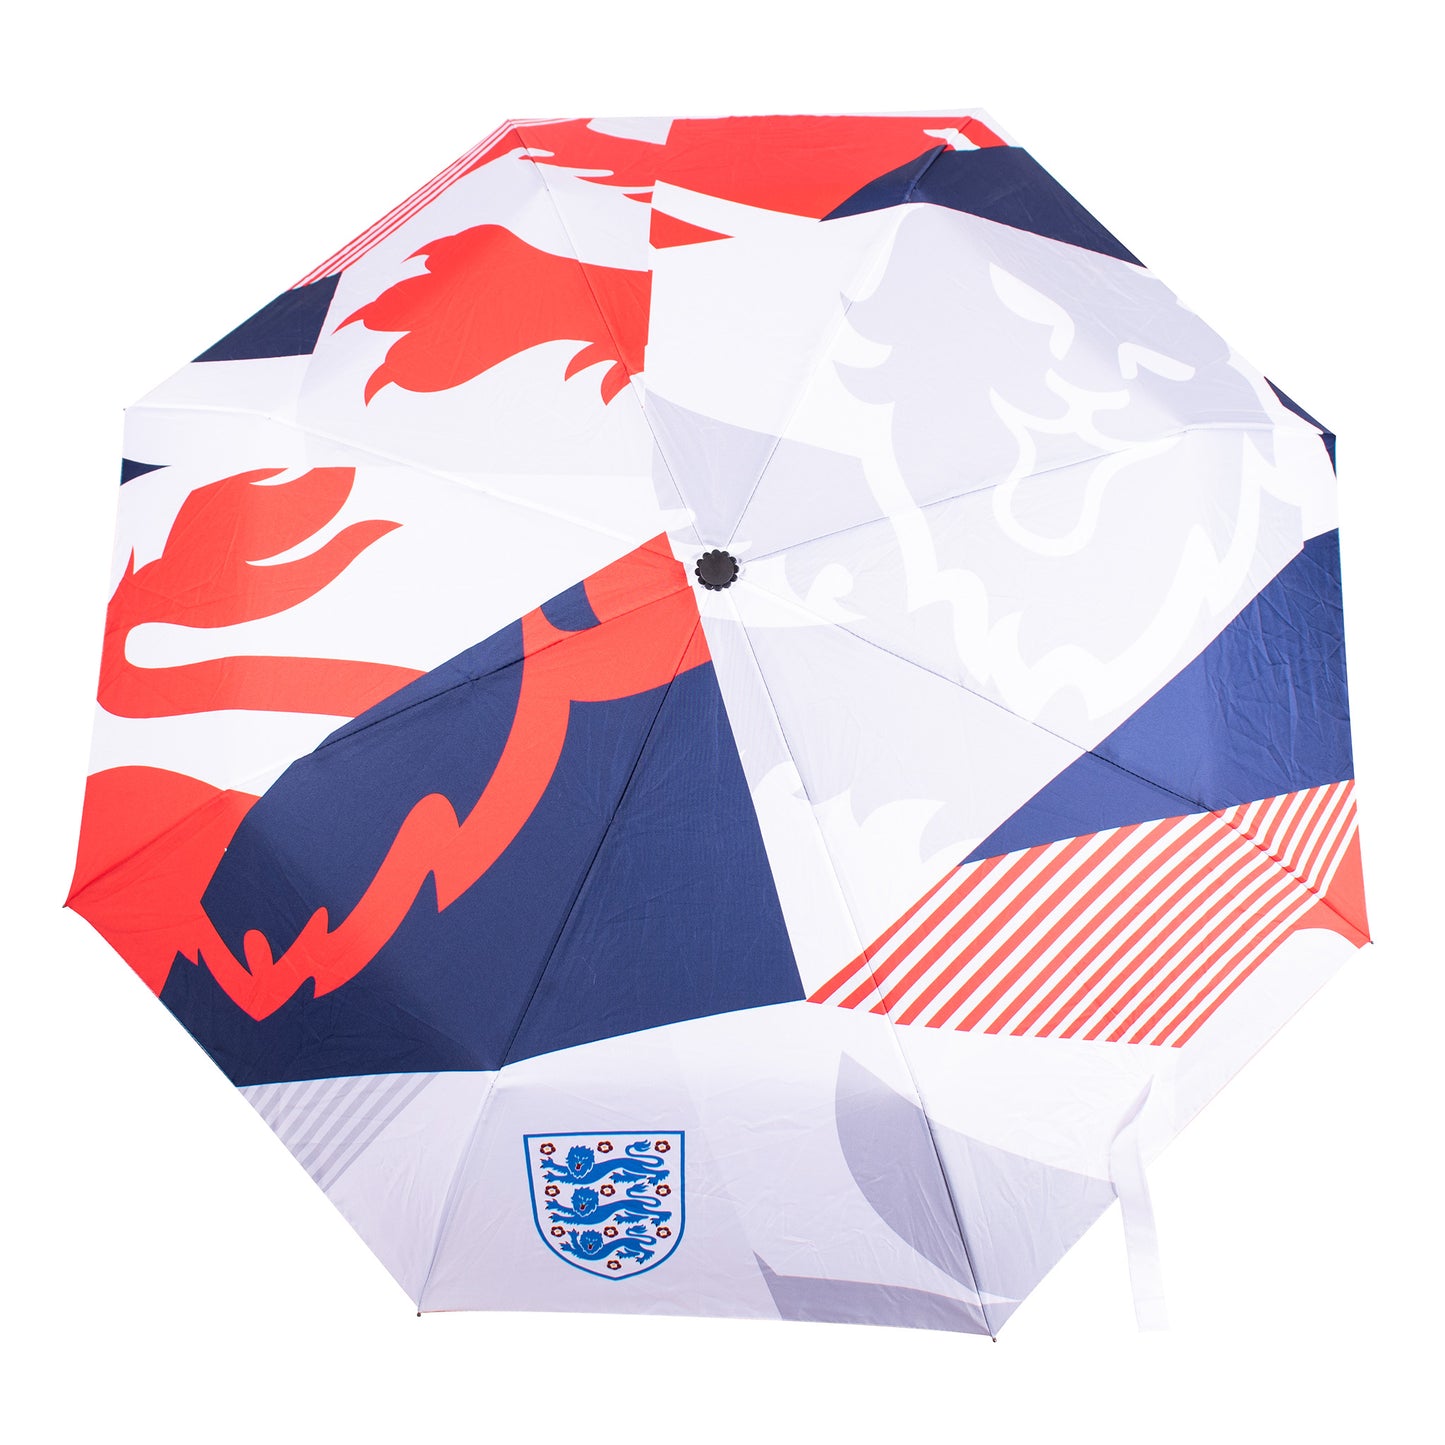 England Pocket Umbrella